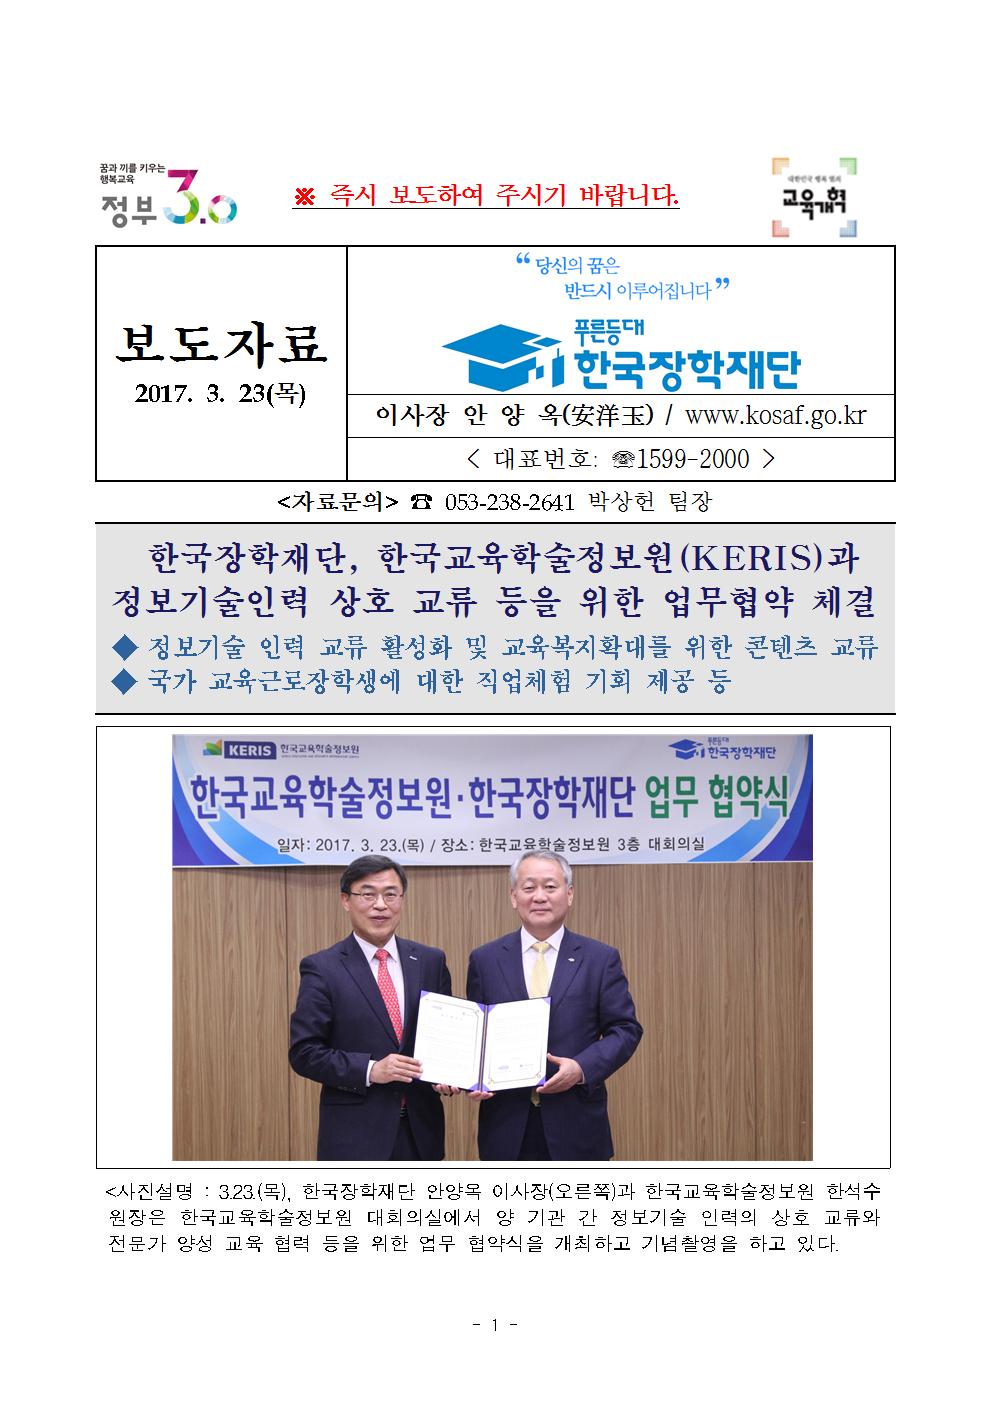 03-23(목)[보도자료] 한국교육학술정보원과 정보기술인력 상호 교류 등을 위한 업무협약 체결001.jpg